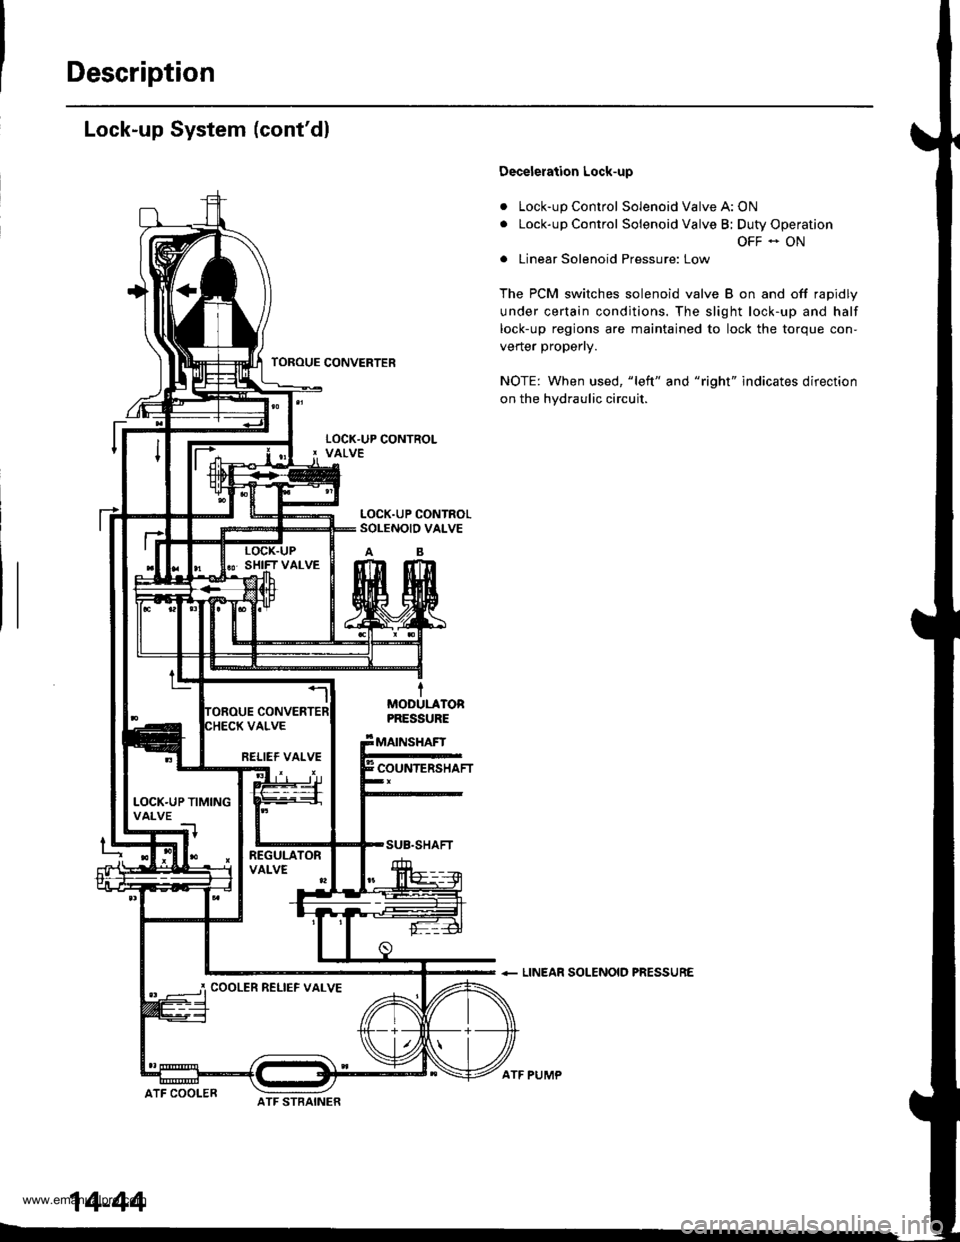 HONDA CR-V 1999 RD1-RD3 / 1.G Workshop Manual 
Description
Lock-up System (contdl
a
a
Decelelation Lock-up
Lock-up Control Solenoid Valve A: ON
Lock-up Control Solenoid Valve B; Duty Operation
OFF - ON
Linear Solenoid Pressure: Low
The PCM switc